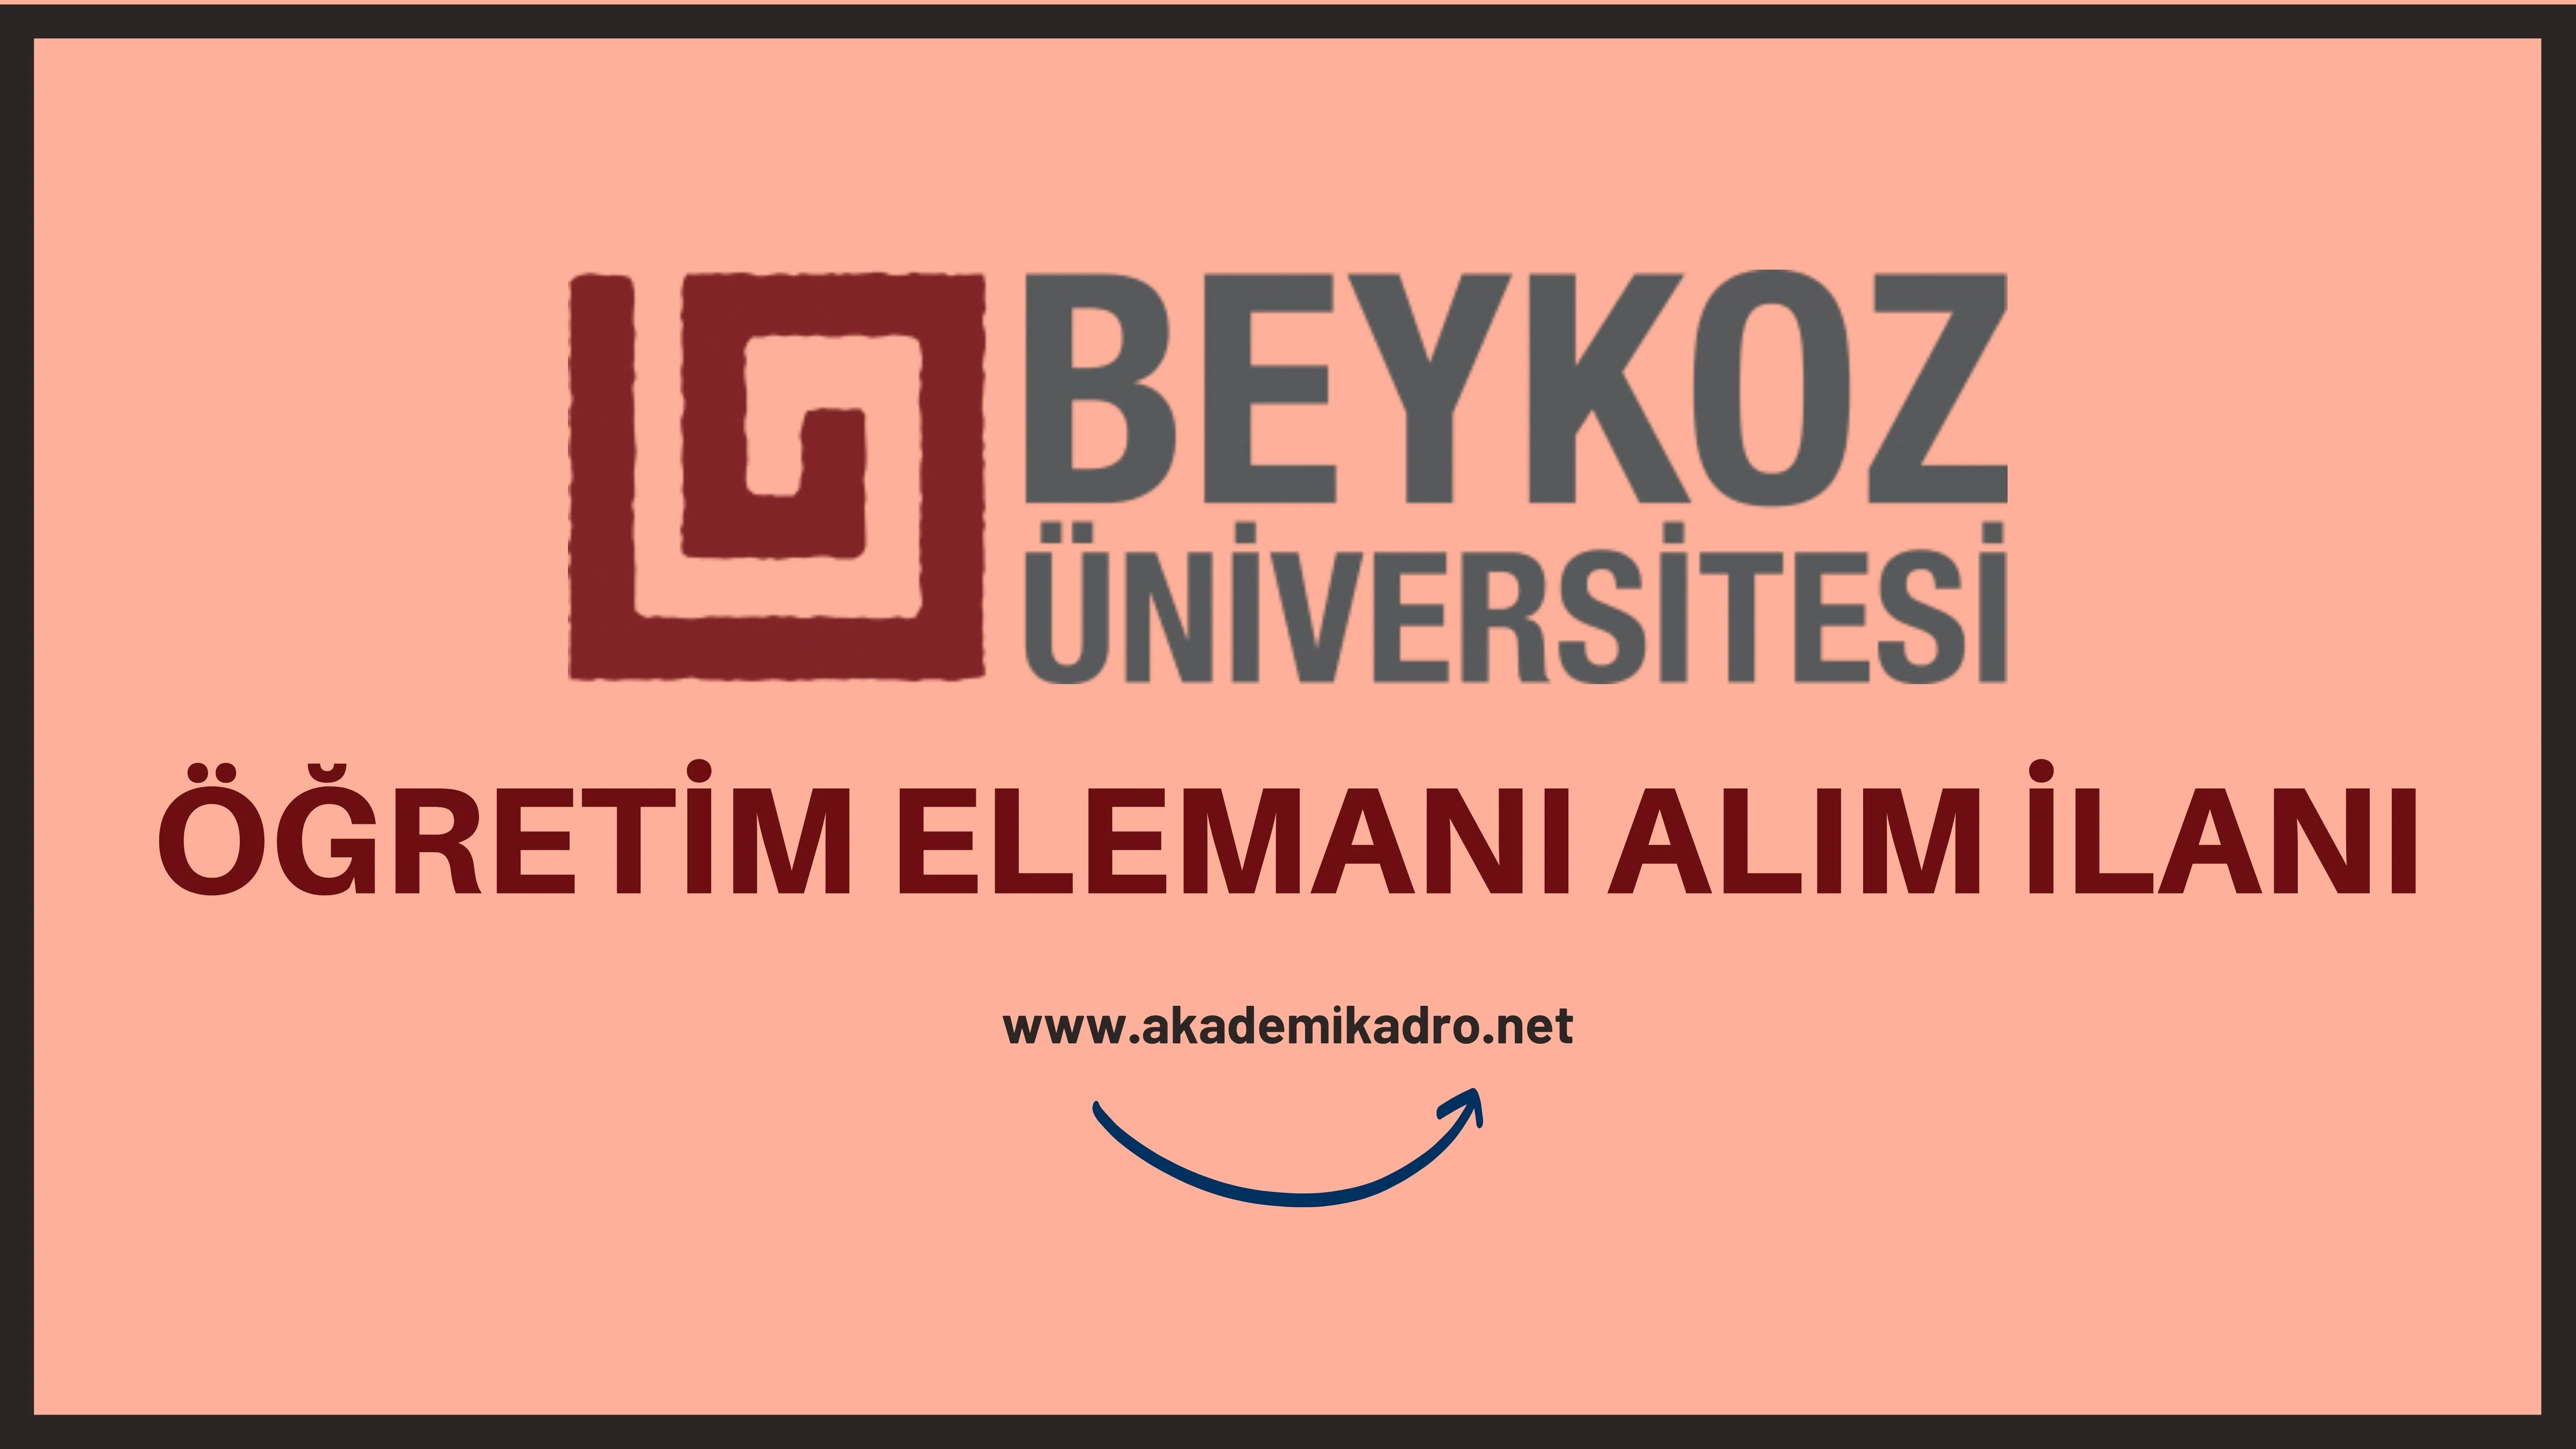 Beykoz Üniversitesi 6 Araştırma görevlisi, 10 Öğretim görevlisi ve 22 Öğretim üyesi alacak.